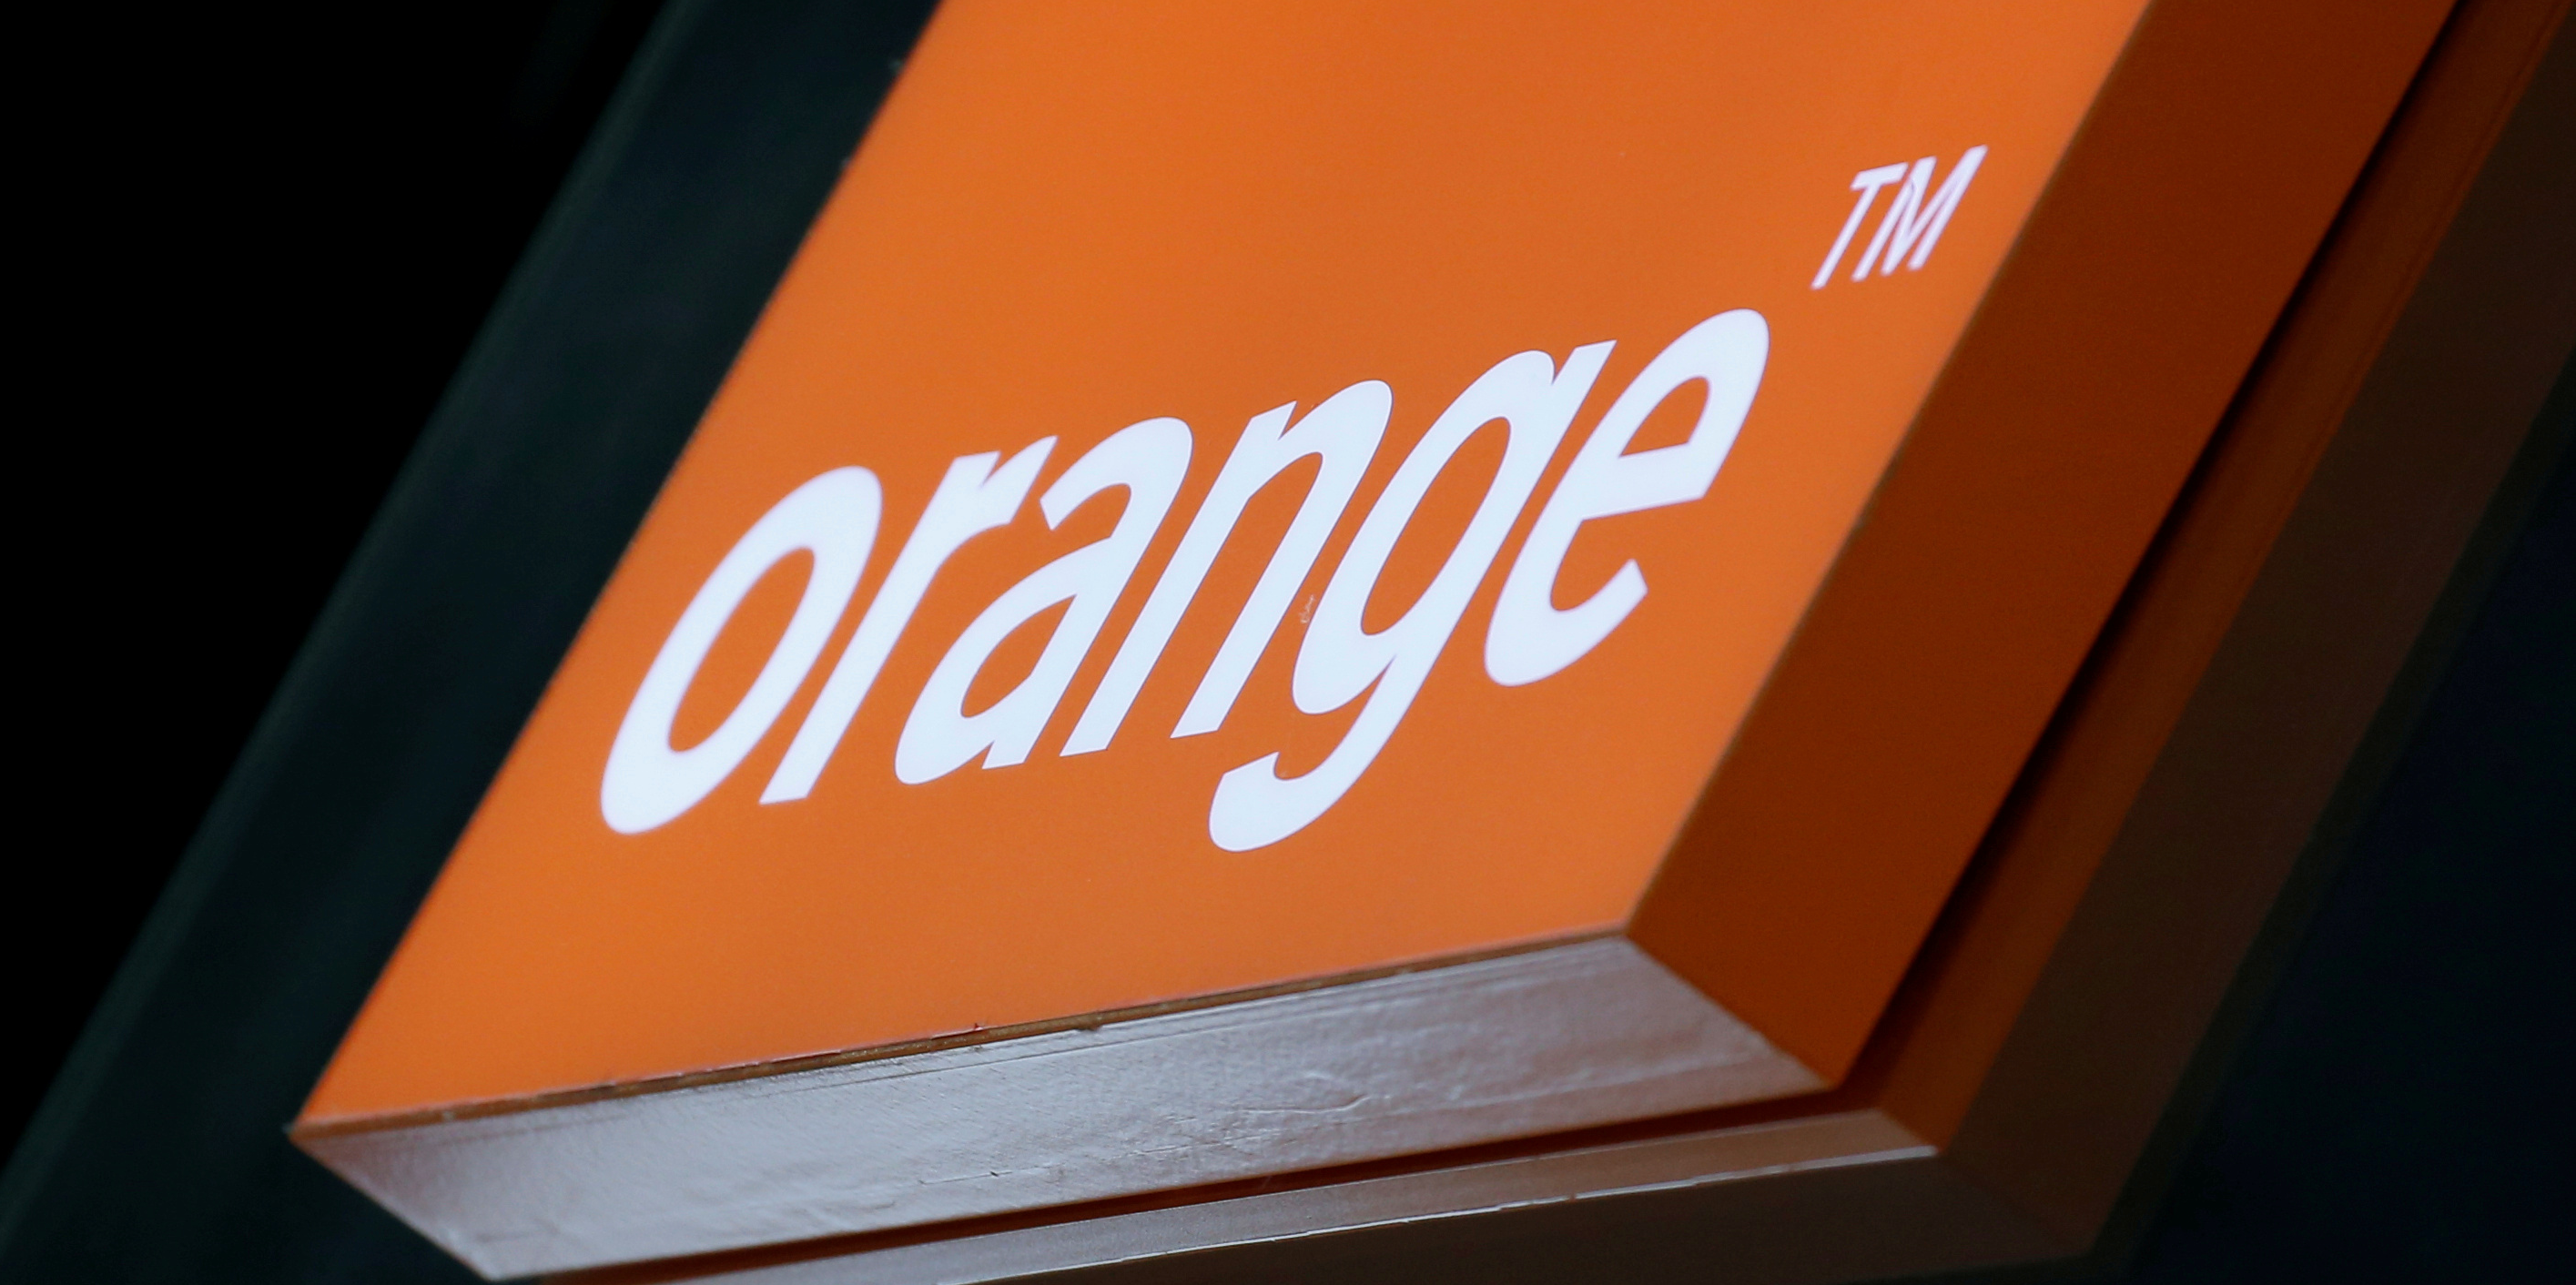 Orange voit son bénéfice net reculer de 10% au premier semestre